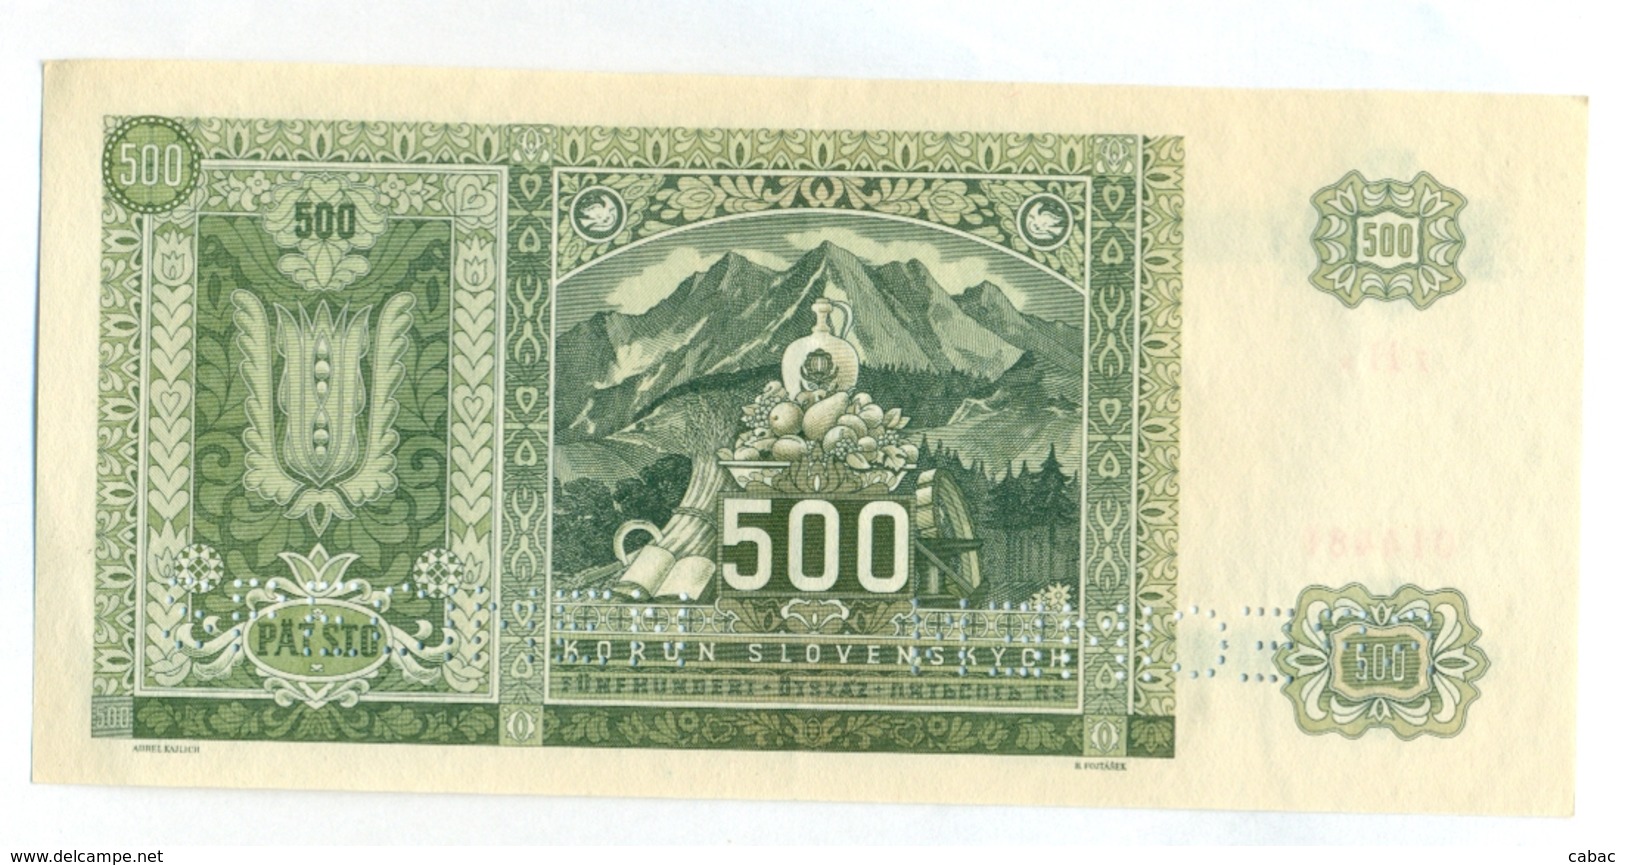 Slovakia 500 Korun 1941 SPECIMEN, Slovaquie,Slovacchia, Slowakei, Patsto Korun, 7 H A + Stamp, RARE - Slowakei